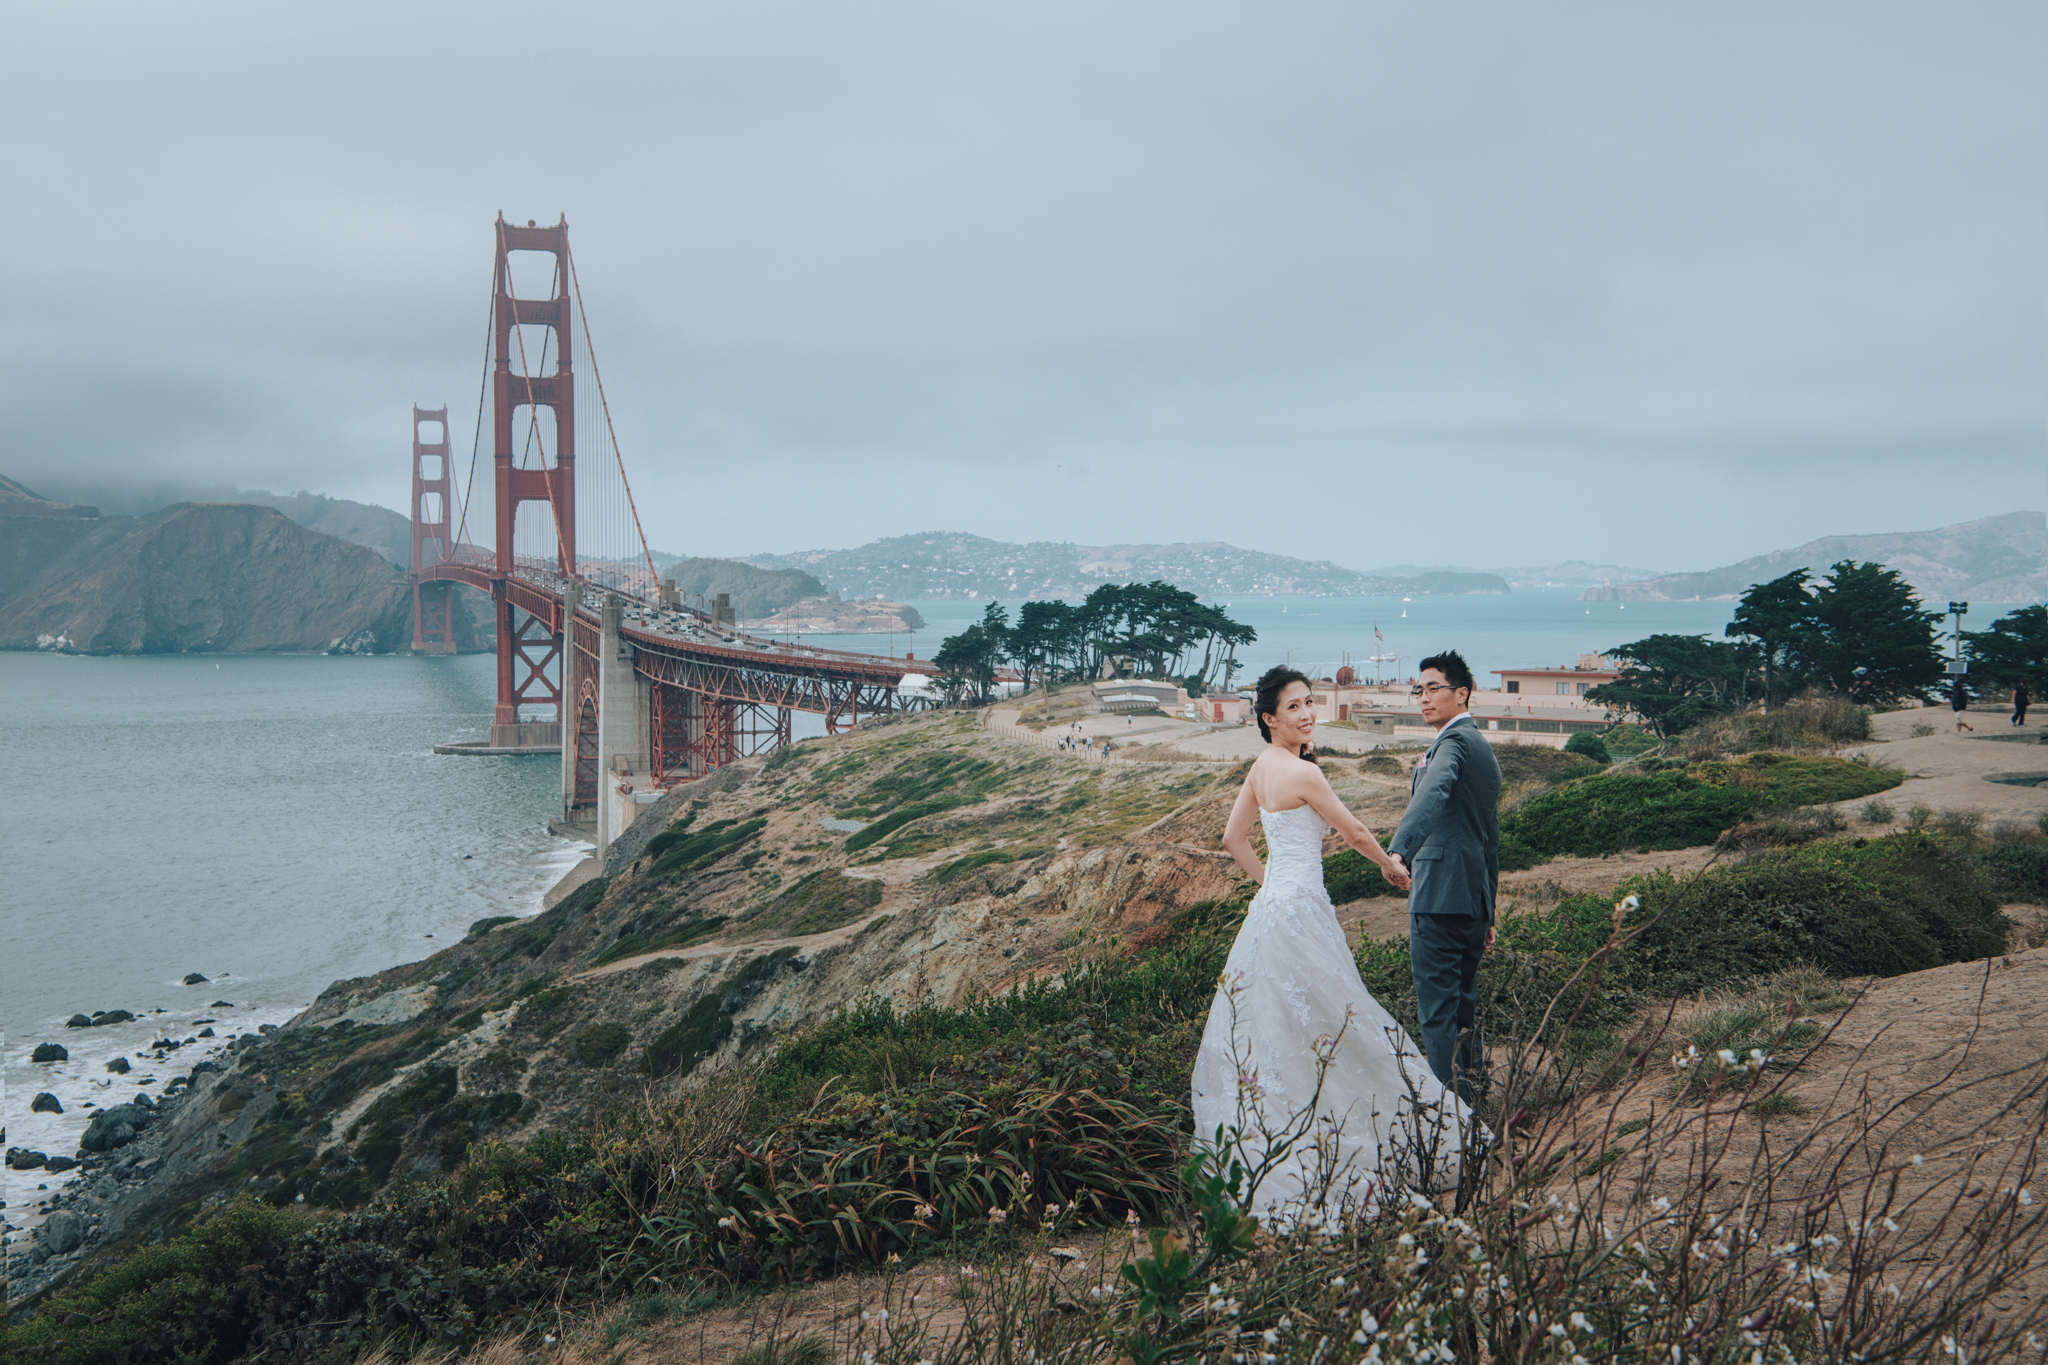 藝術婚禮, Donfer, Donfer Photography, EASTERN WEDDING, San Francisco Pre-Wedding , 海外婚紗, 舊金山海外婚紗, 藝術婚紗